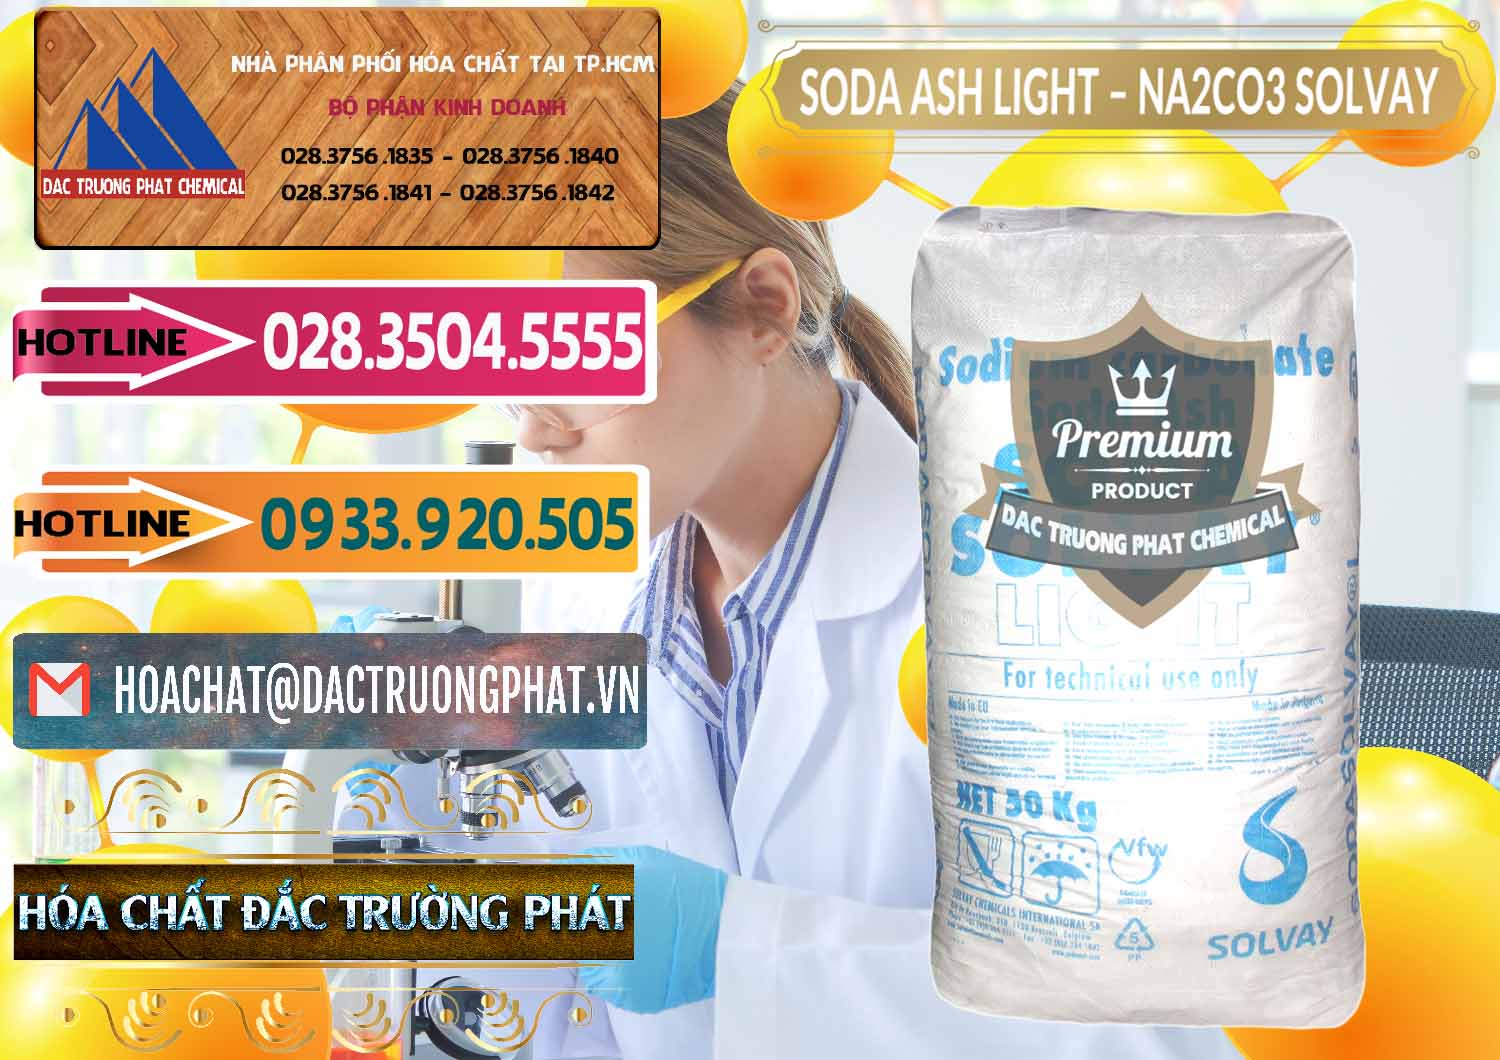 Cty phân phối ( bán ) Soda Ash Light - NA2CO3 Solvay Bulgaria - 0126 - Nơi phân phối - cung cấp hóa chất tại TP.HCM - dactruongphat.vn